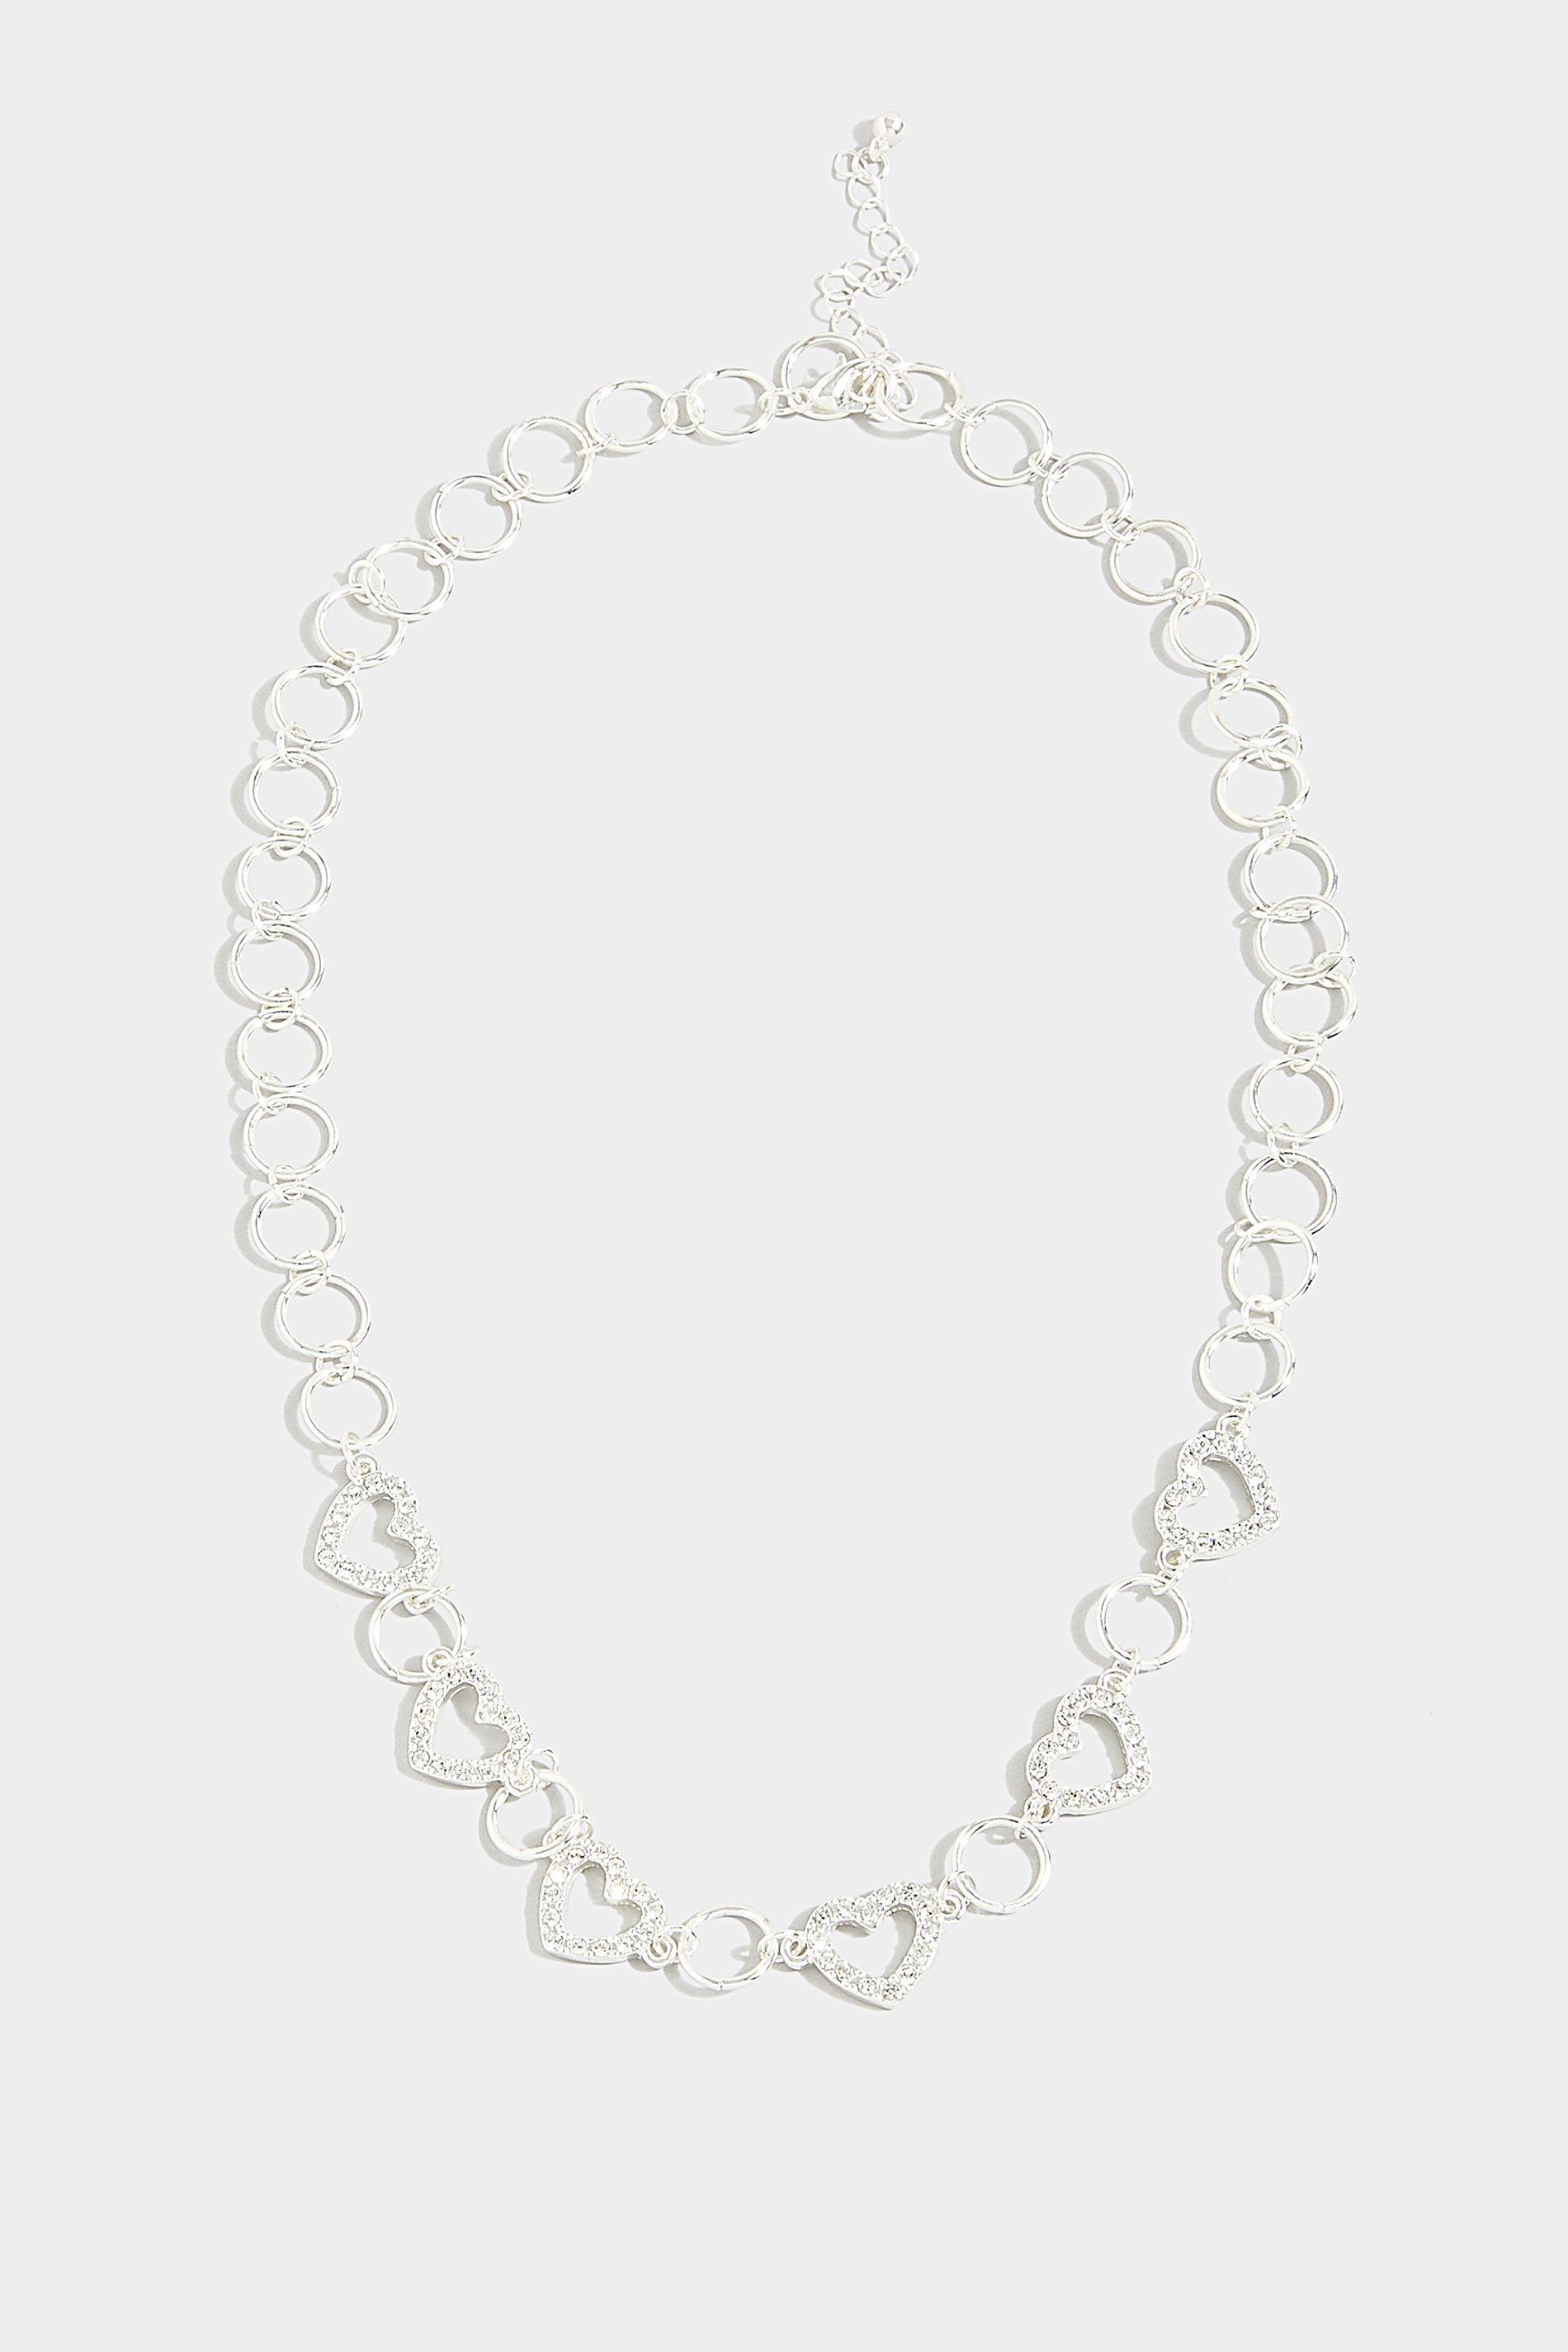 Silver Tone Diamante Heart Chain Necklace_1.jpg